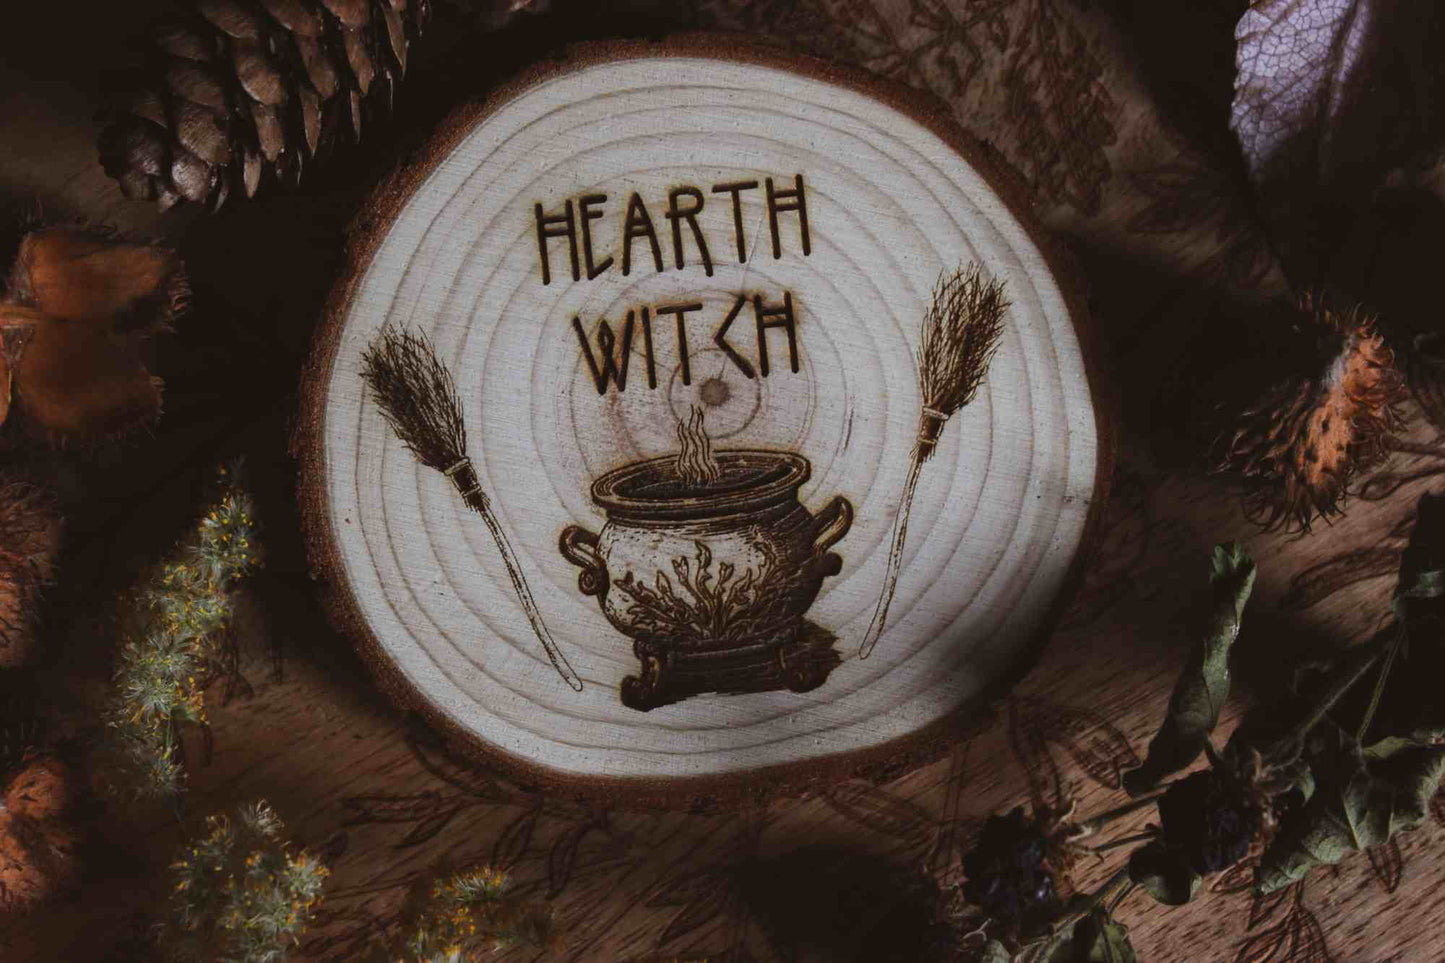 Wandbild aus Holz "Hearth Witch" -Bild eines hölzernen Gegenstands mit der Inschrift ‘Hearth Witch’, auf der Scheibe sieht man 2 Besen die einen Hexenkessel umrahmen umgeben von natürlichen Elementen wie Tannenzapfen und Blumen, 